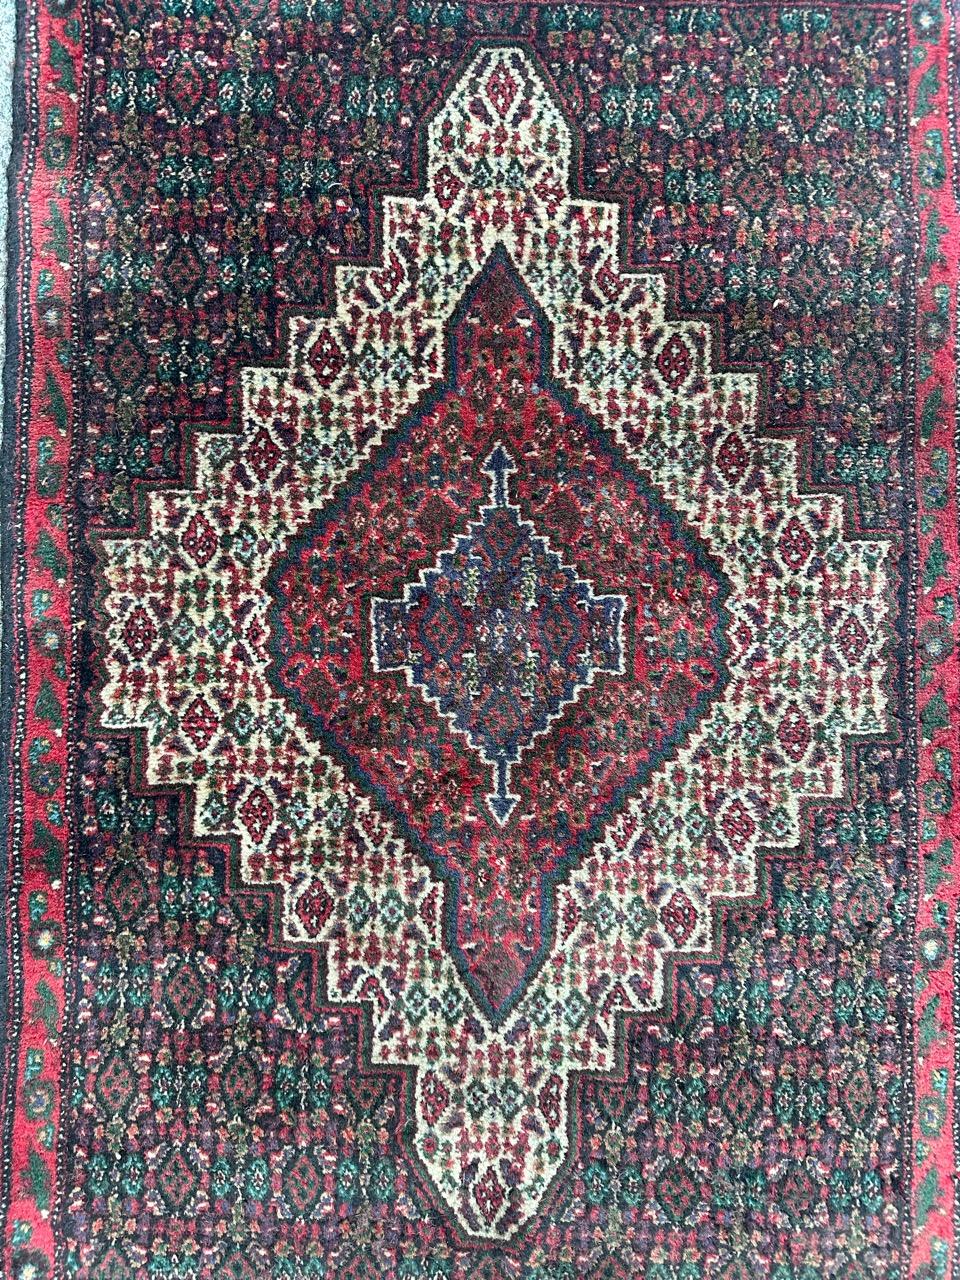 Hübscher kleiner Seneh-Teppich mit schönem geometrischem Herati-Muster und schönen Farben, komplett handgeknüpft mit Wolle auf Baumwollgrund 

✨✨✨
